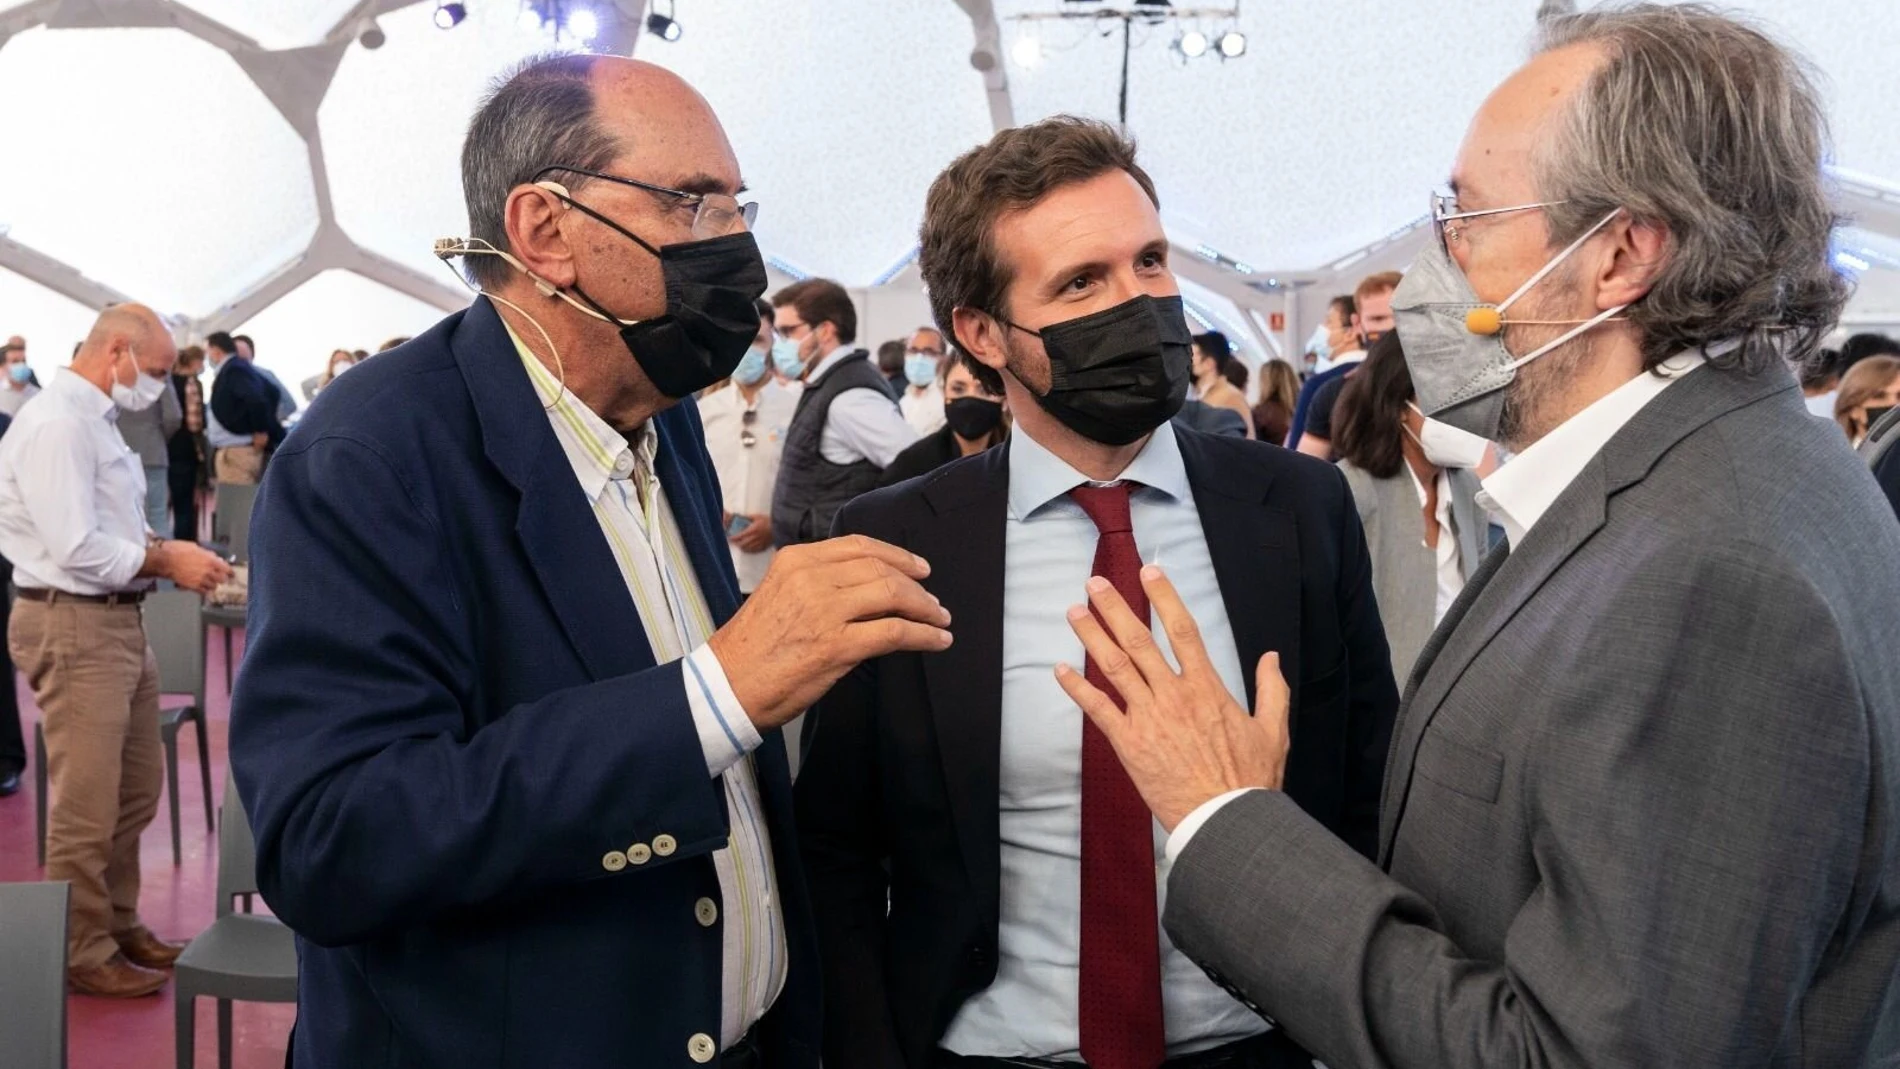 El presidente del PP, Pablo Casado, junto al exportavoz de Ciudadanos Juan Carlos Girauta y el expresidente del PP catalán Alejo Vidal-Quadras, en la Convención del PP  celebrado en Valladolid.TAREK (PP)28/09/2021